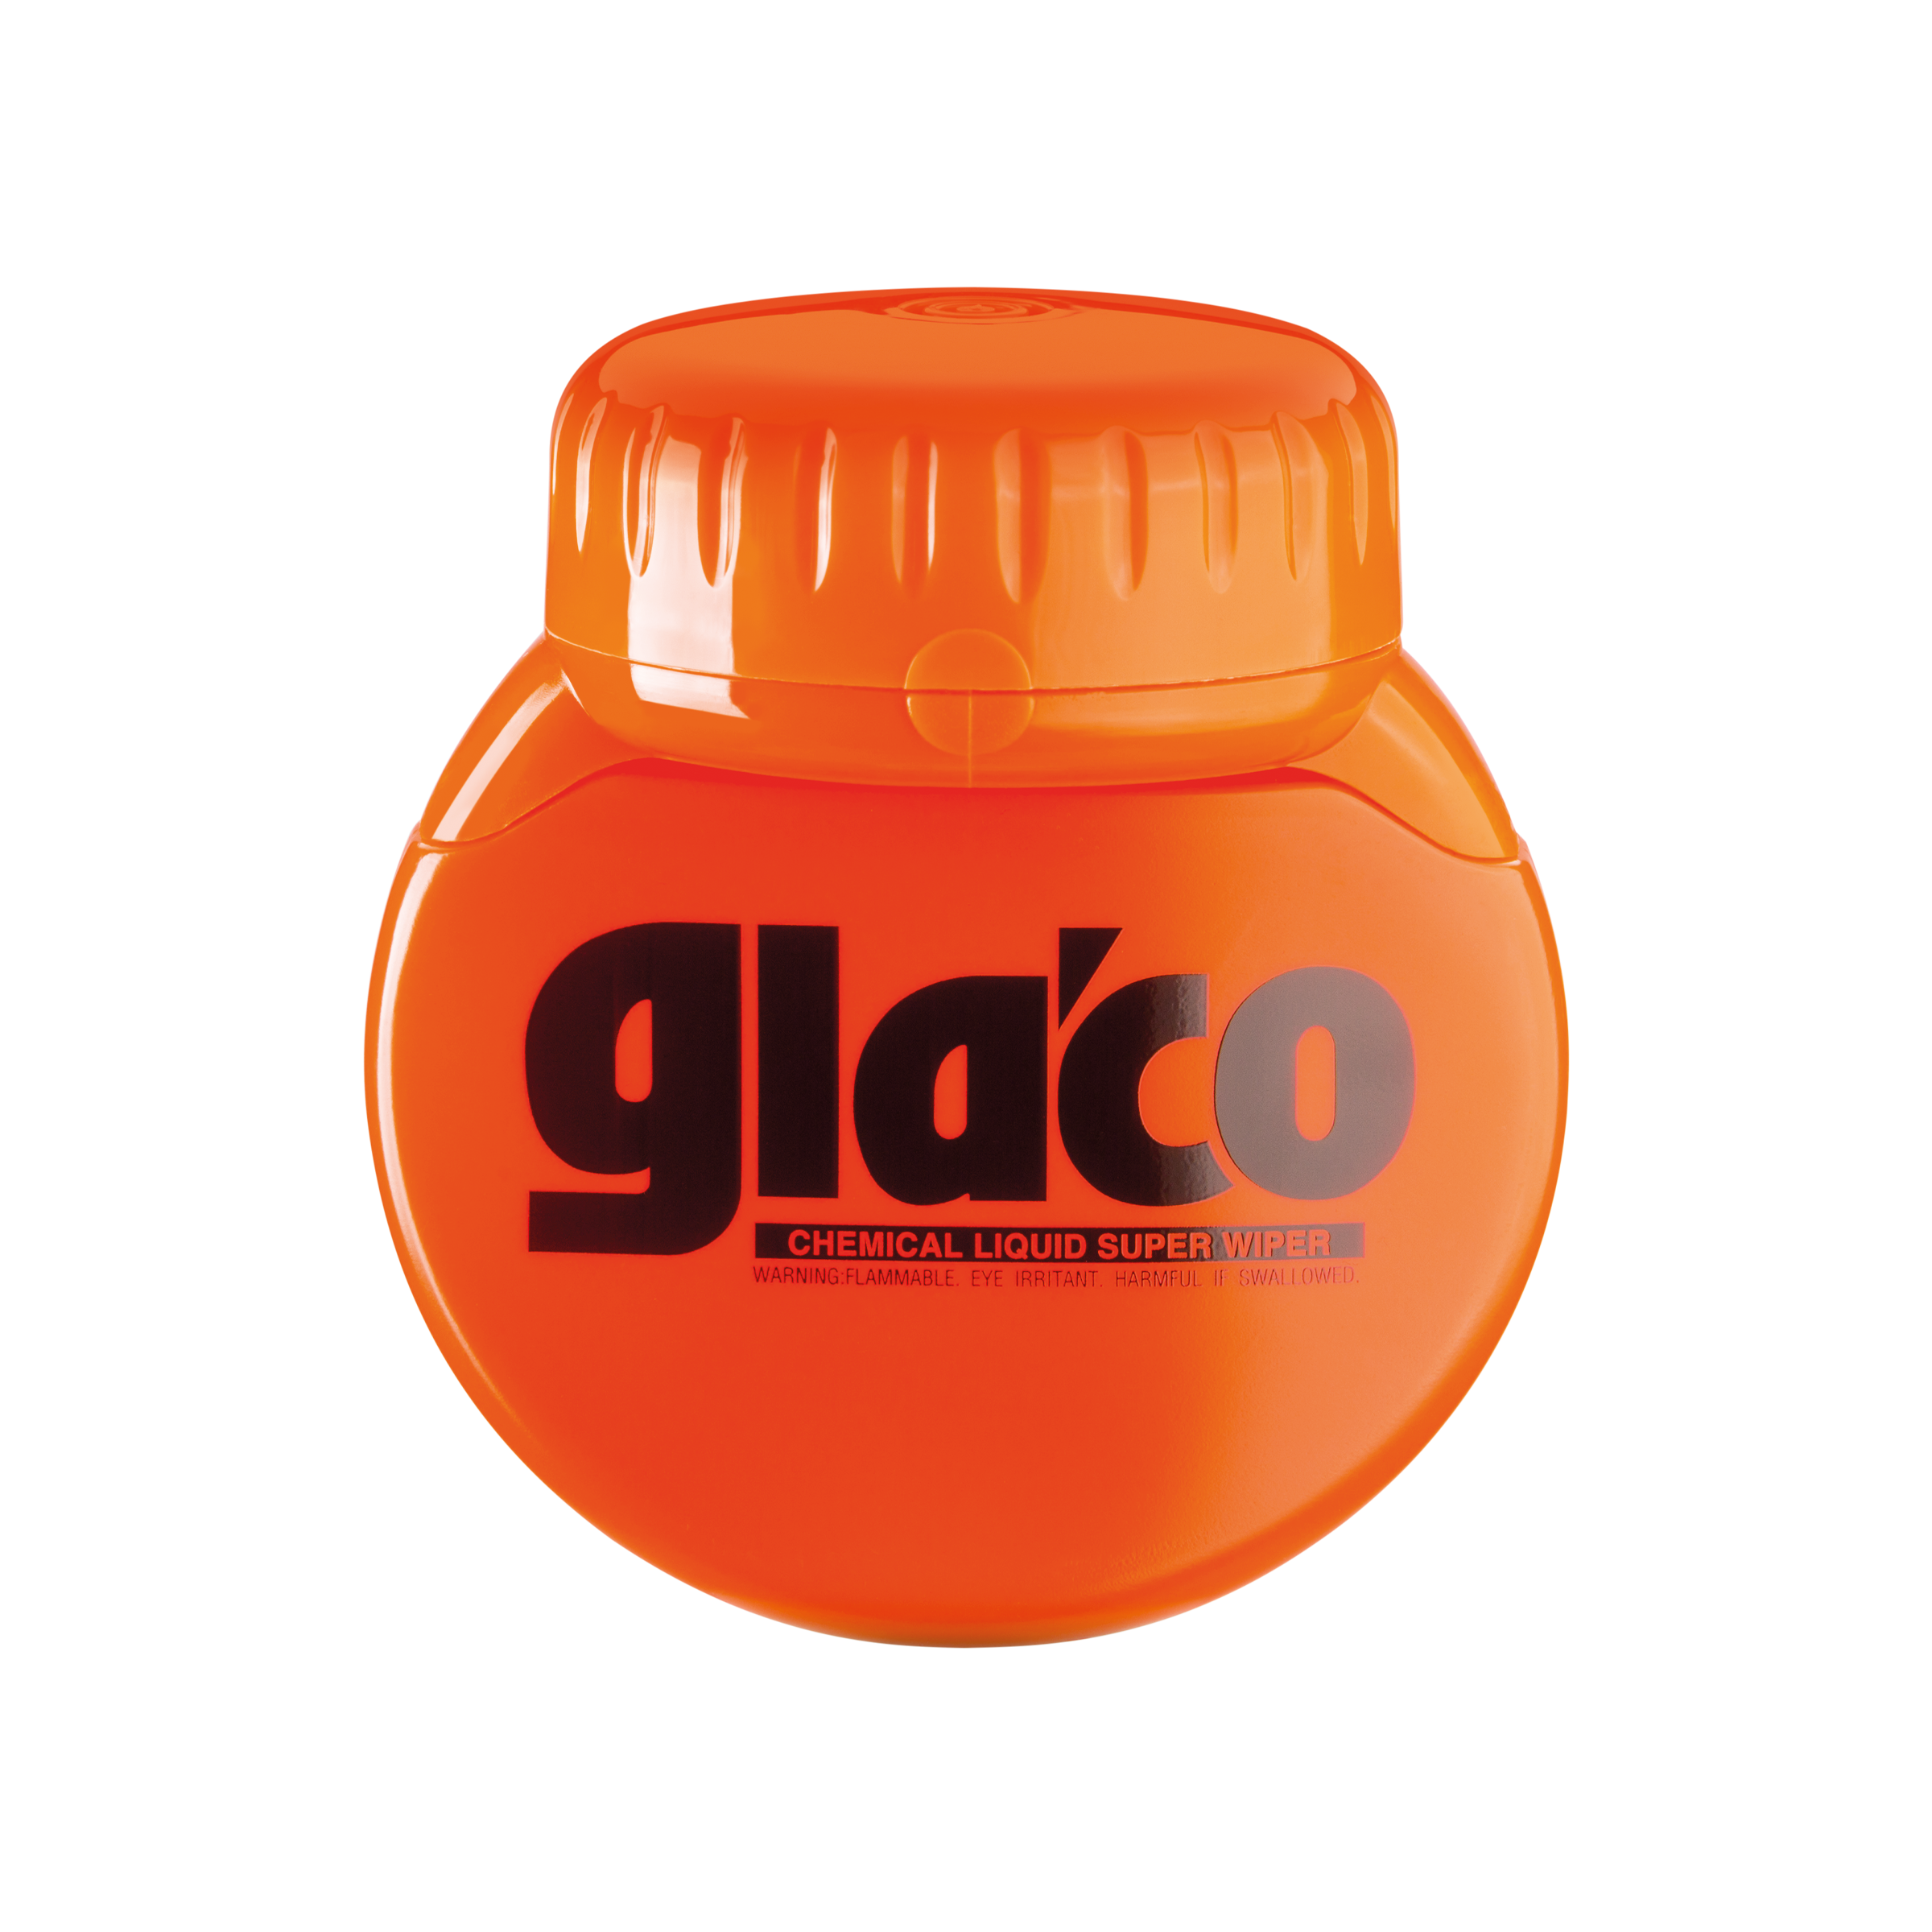 Soft99 Glaco Q Glass Preparation Agent